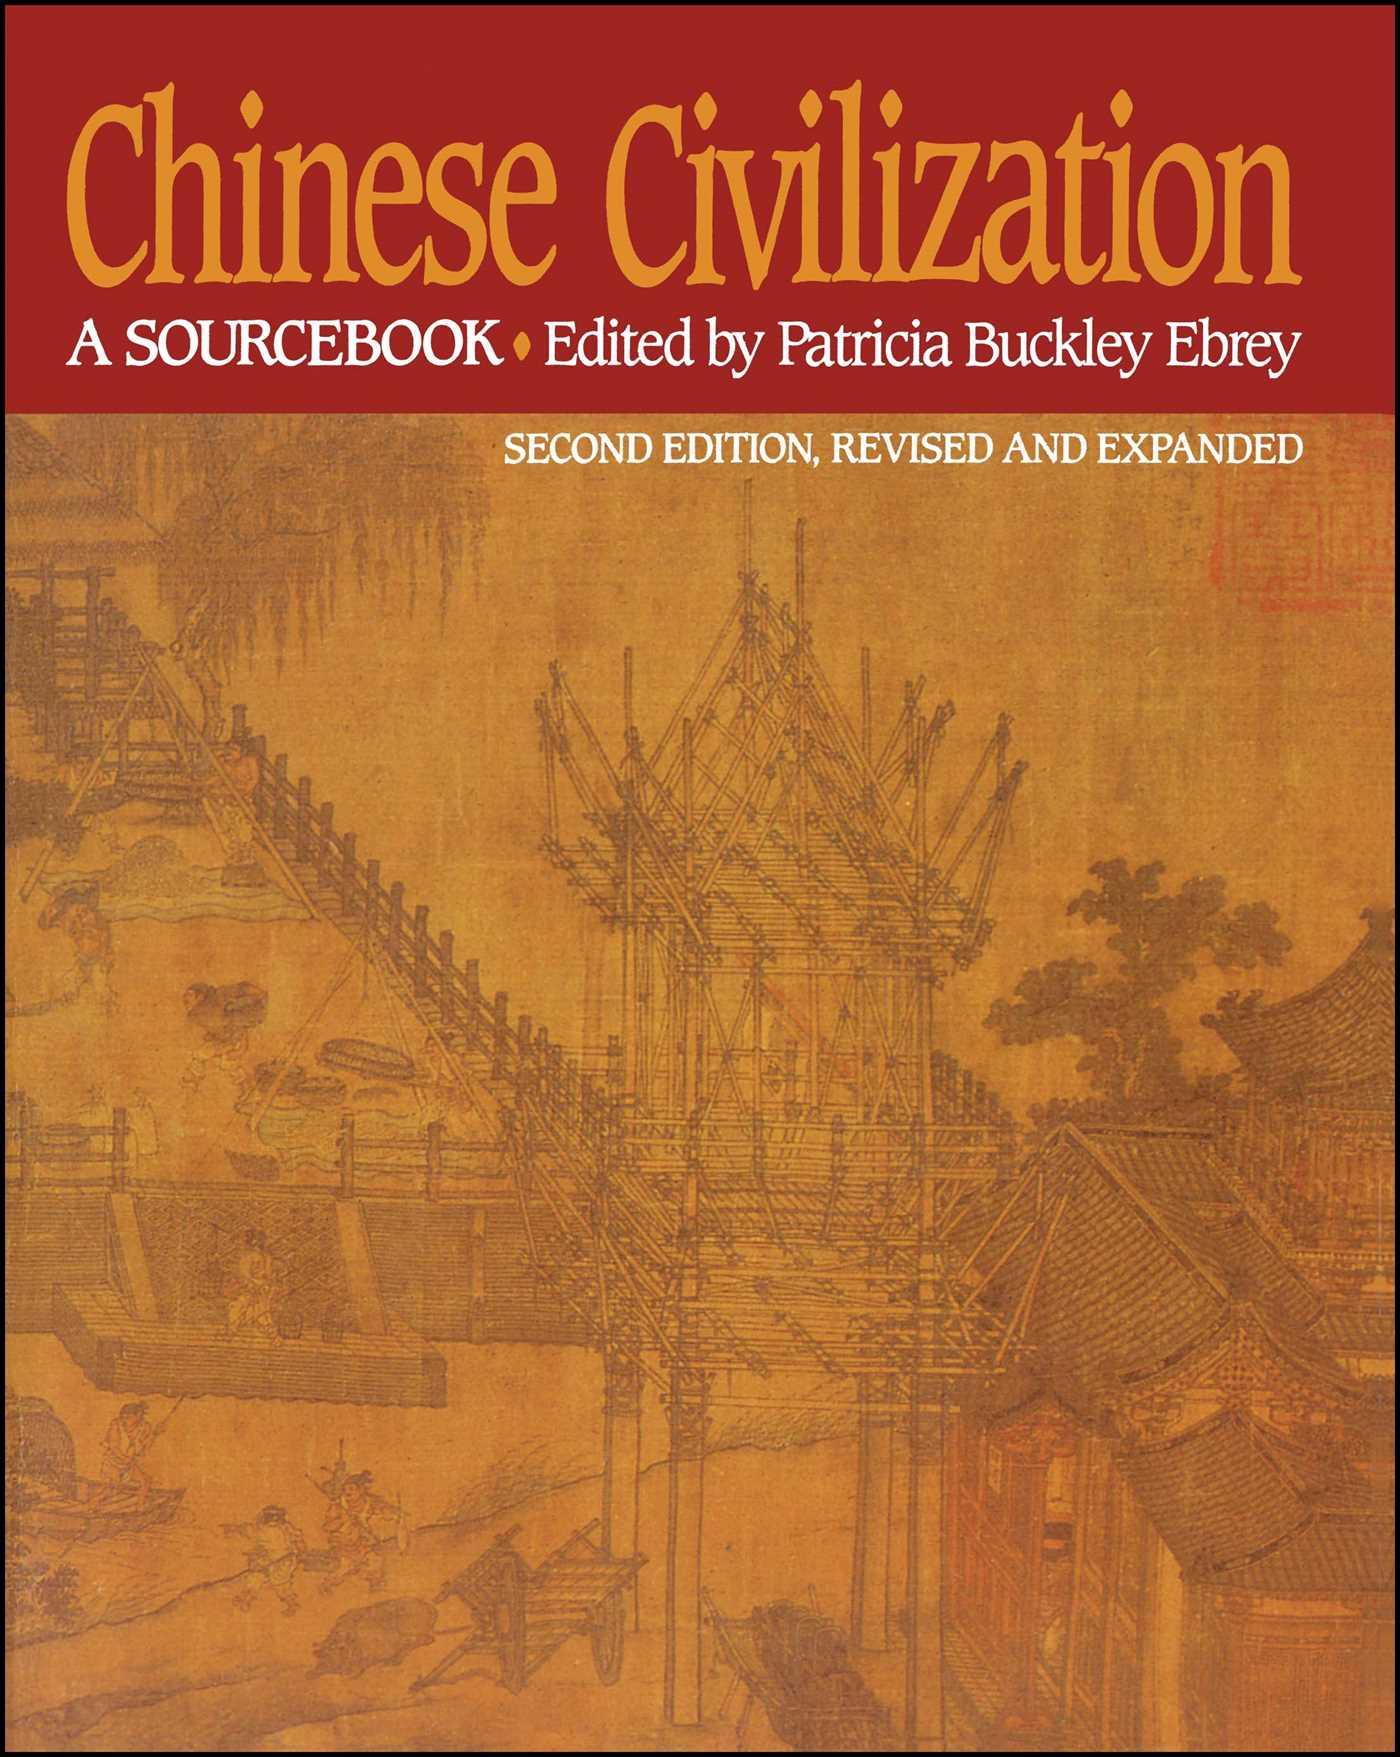 Chinese Civilization / A Sourcebook, 2nd Ed / Patricia Buckley Ebrey / Taschenbuch / Kartoniert / Broschiert / Englisch / 1993 / Free Press / EAN 9780029087527 - Ebrey, Patricia Buckley